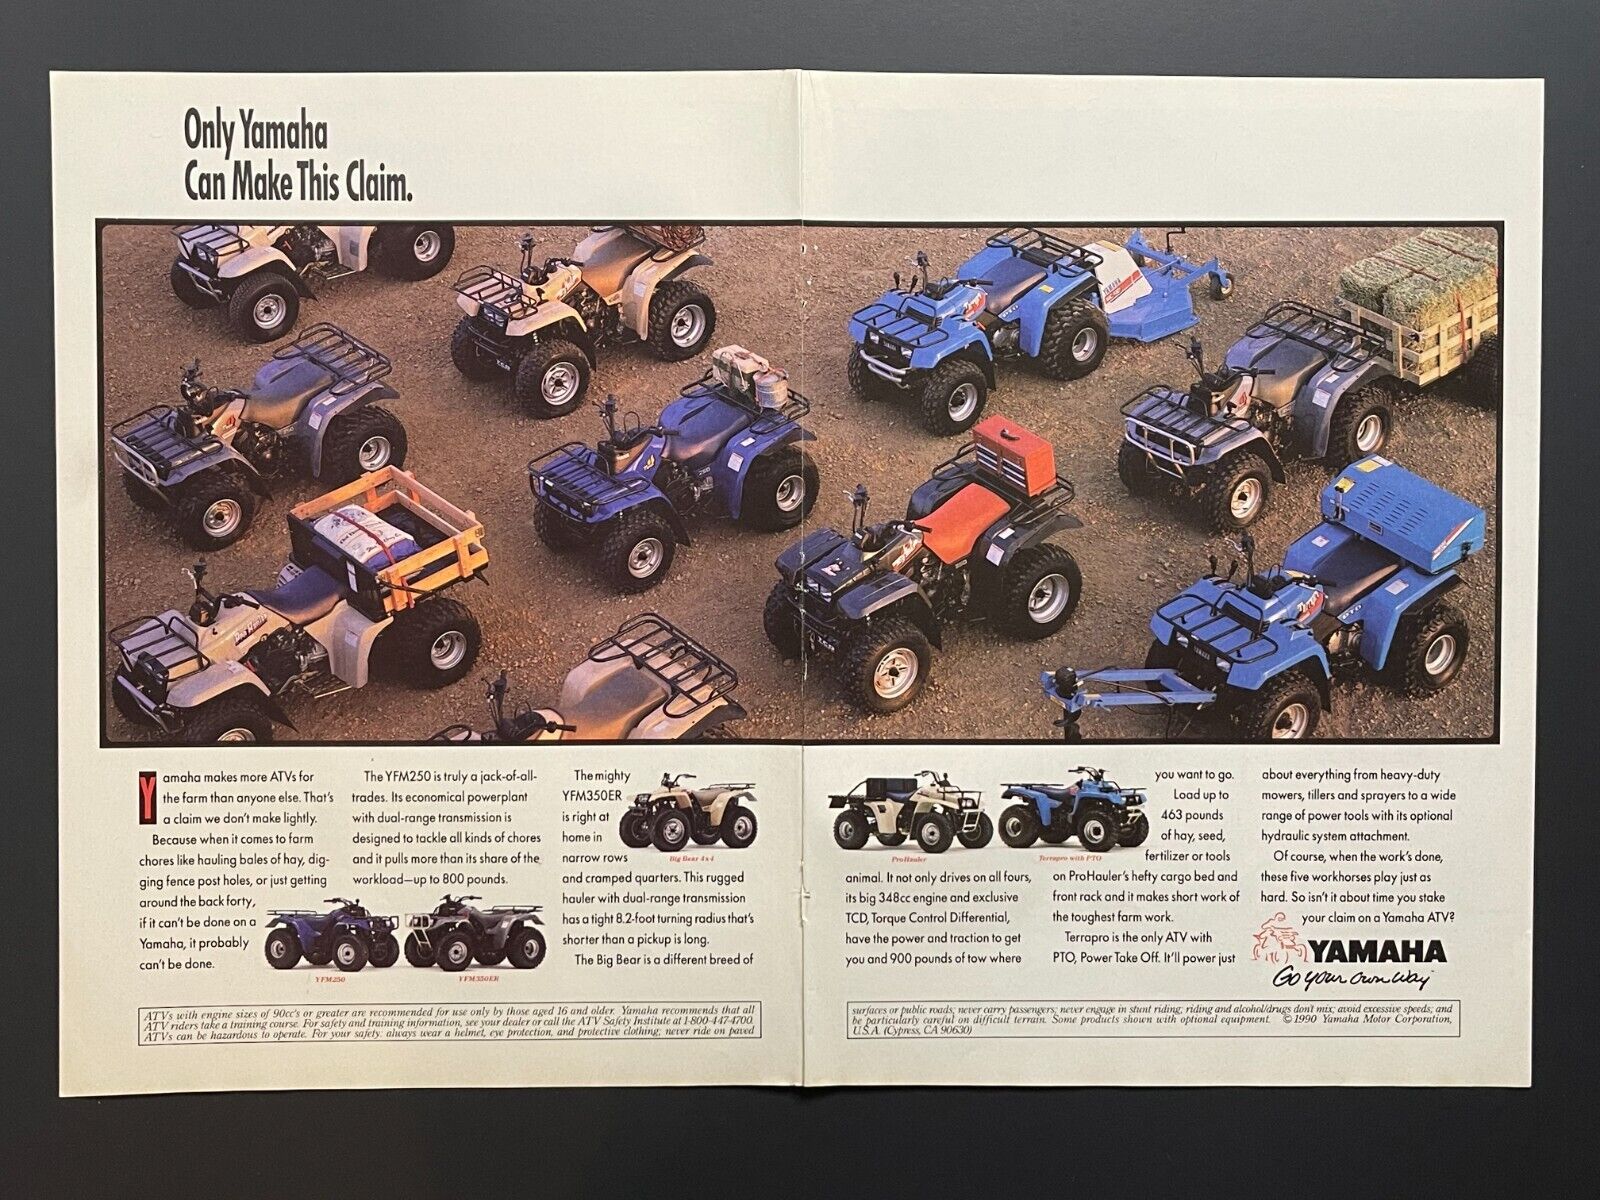 Original 1990 Yamaha YFM Series ATV - Original Print Advertisement (17in x 11in)